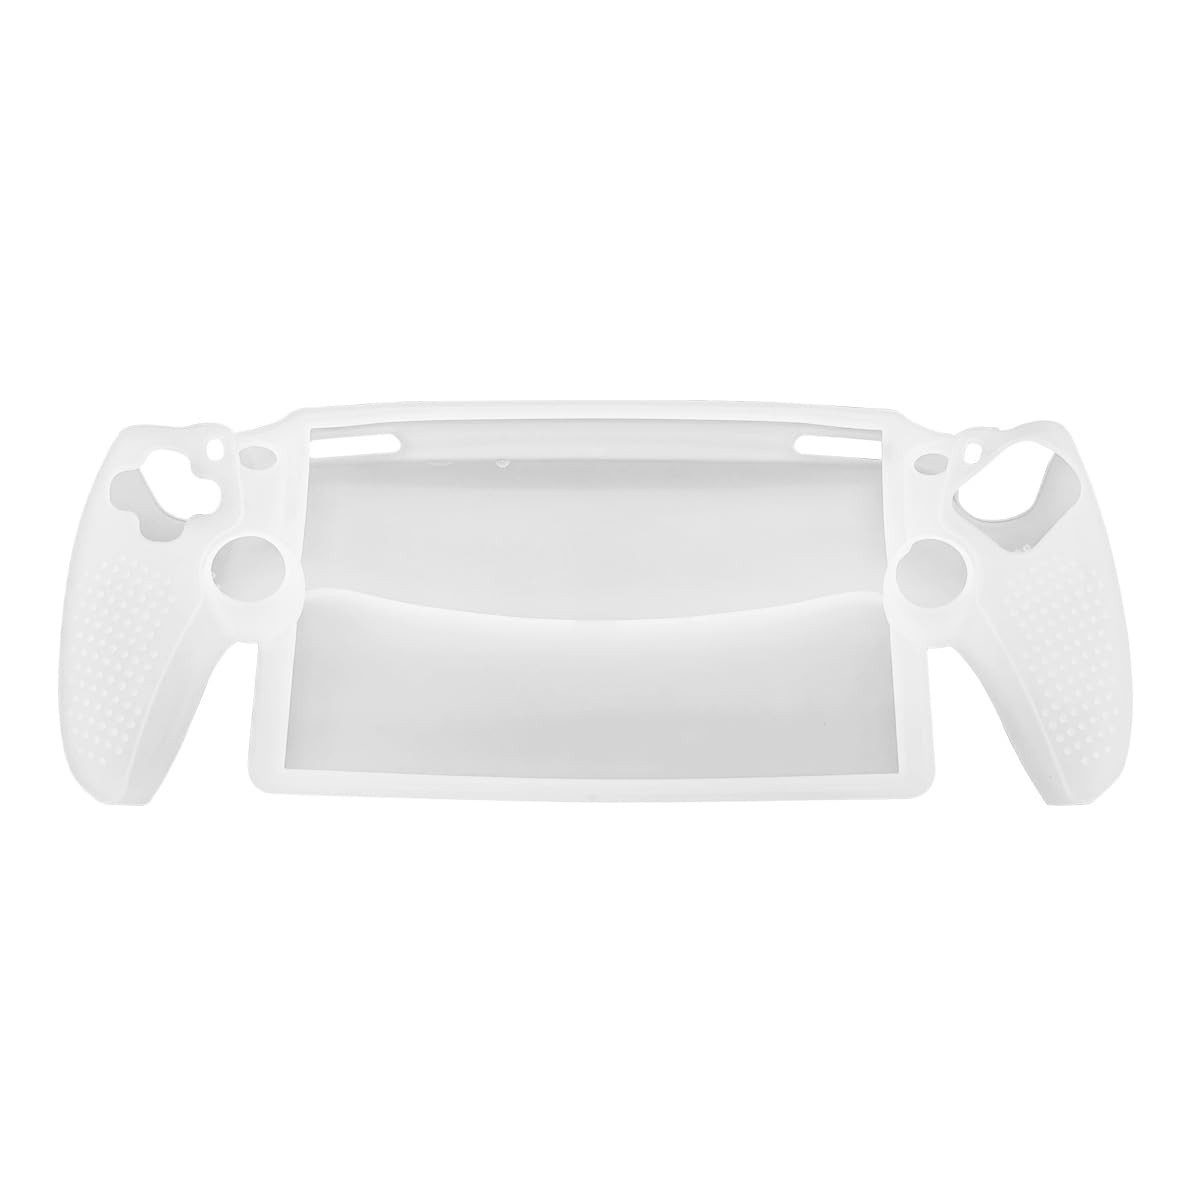 Zeitlosigkeit Silikon Hülle Kompatibel mit Playstation Portal Remote Player PlayStation-Controller (Anti-Kratzer TPU Case Cover Stoßfest Schutzhülle für PS5 Portal)